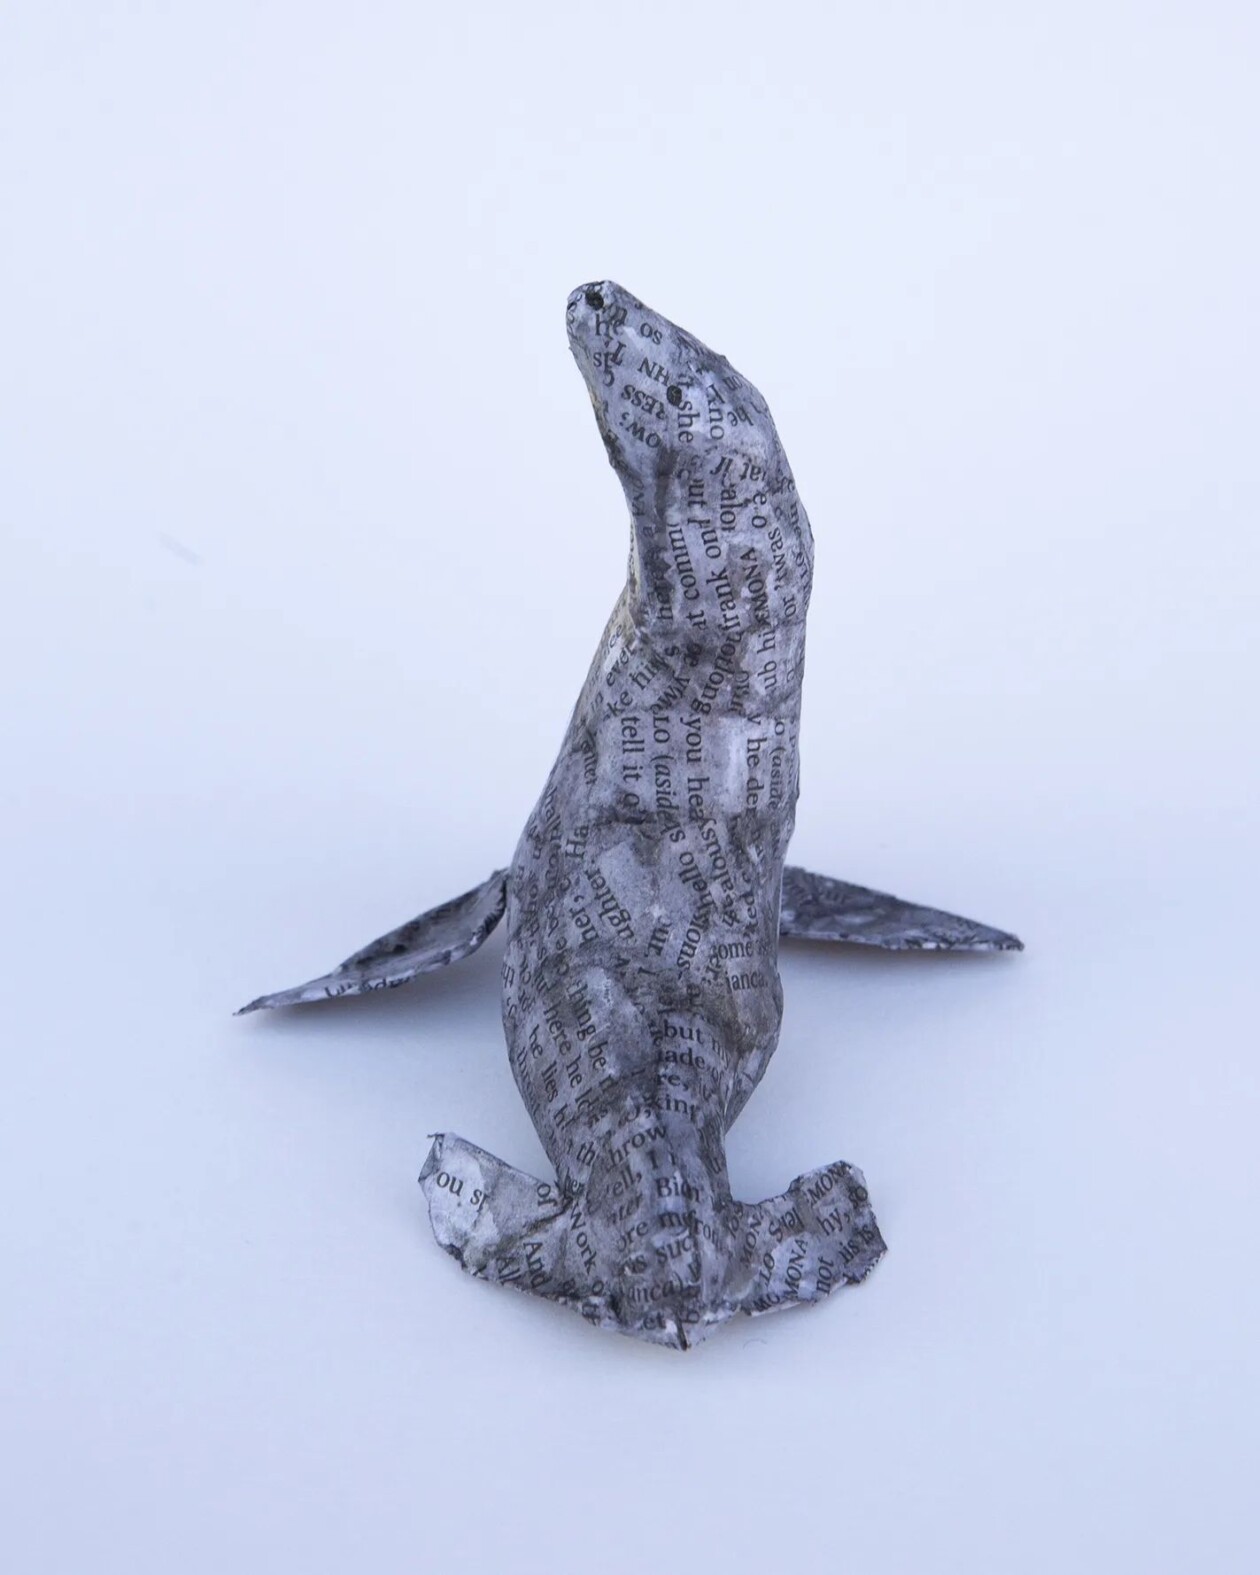 Wonderful Animal Papier Mâché Sculptures By Diana Parkhouse (5)